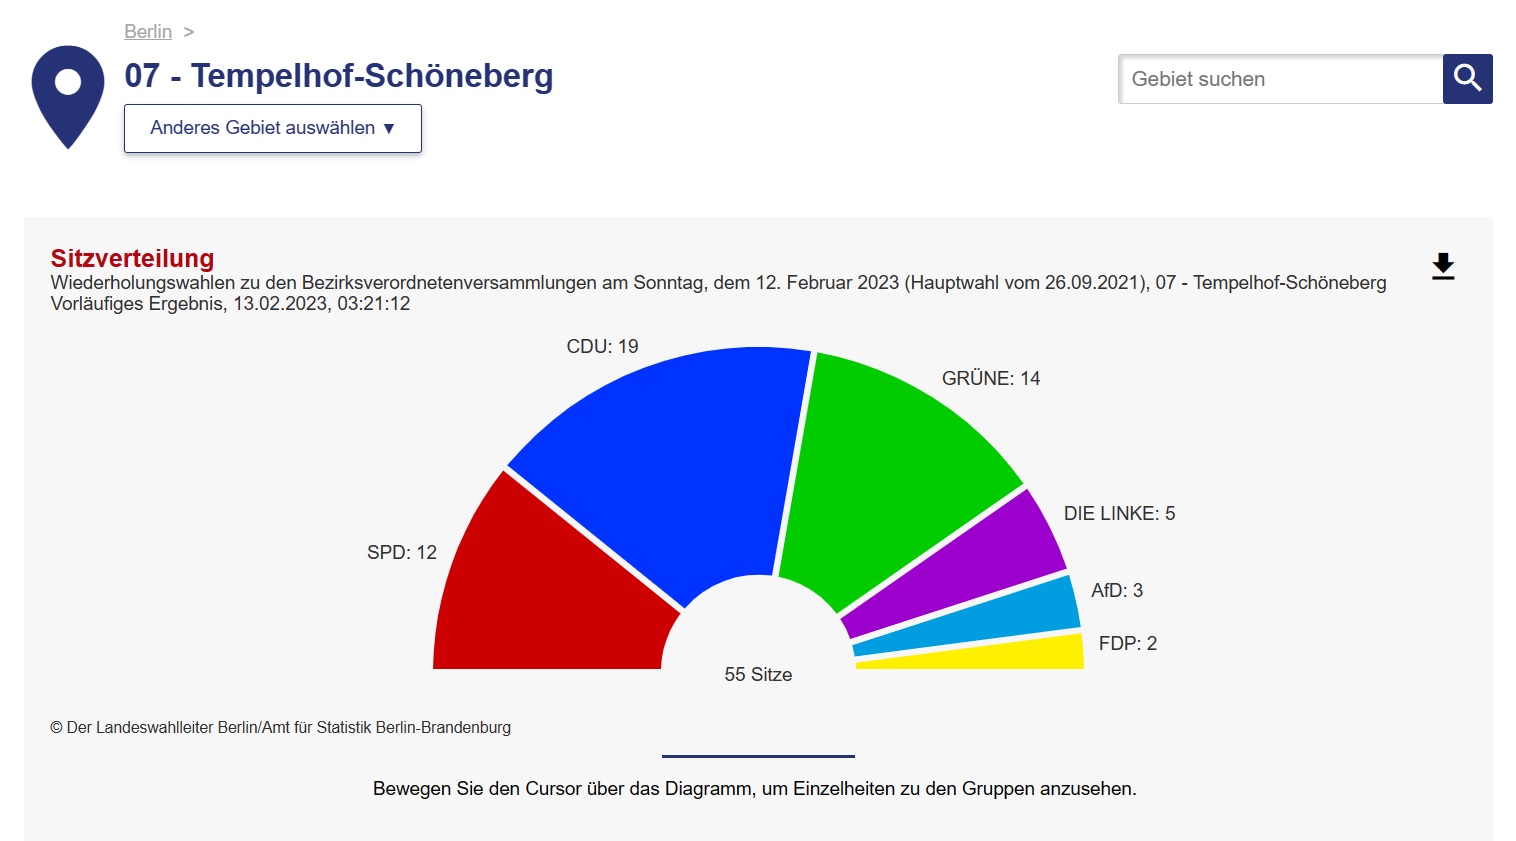 Der Landeswahlleiter Berlin/Amt für Statistik Berlin-Brandenburg